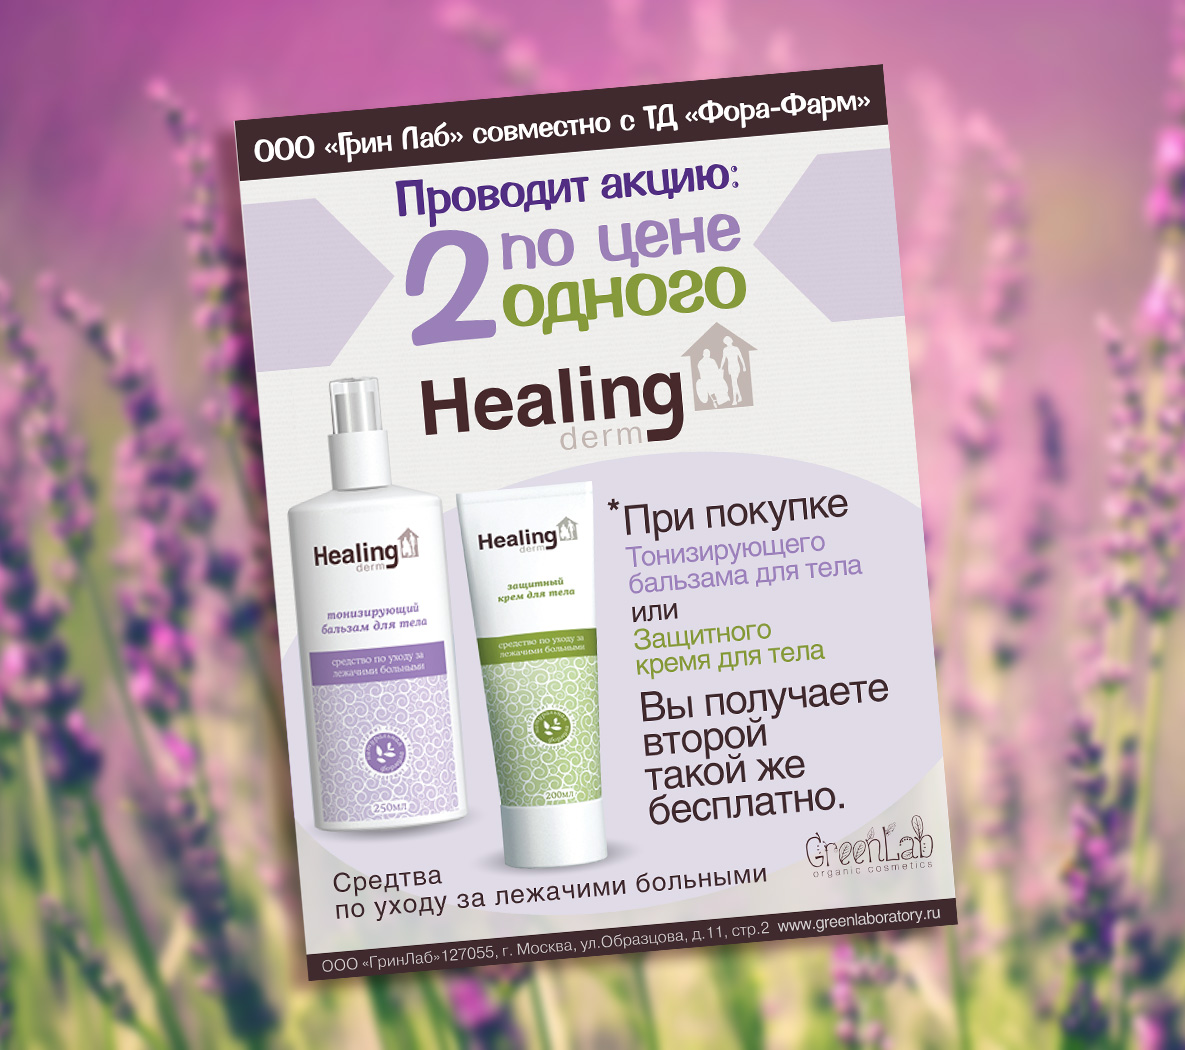 Рекламная листовка ТМ Healing derm